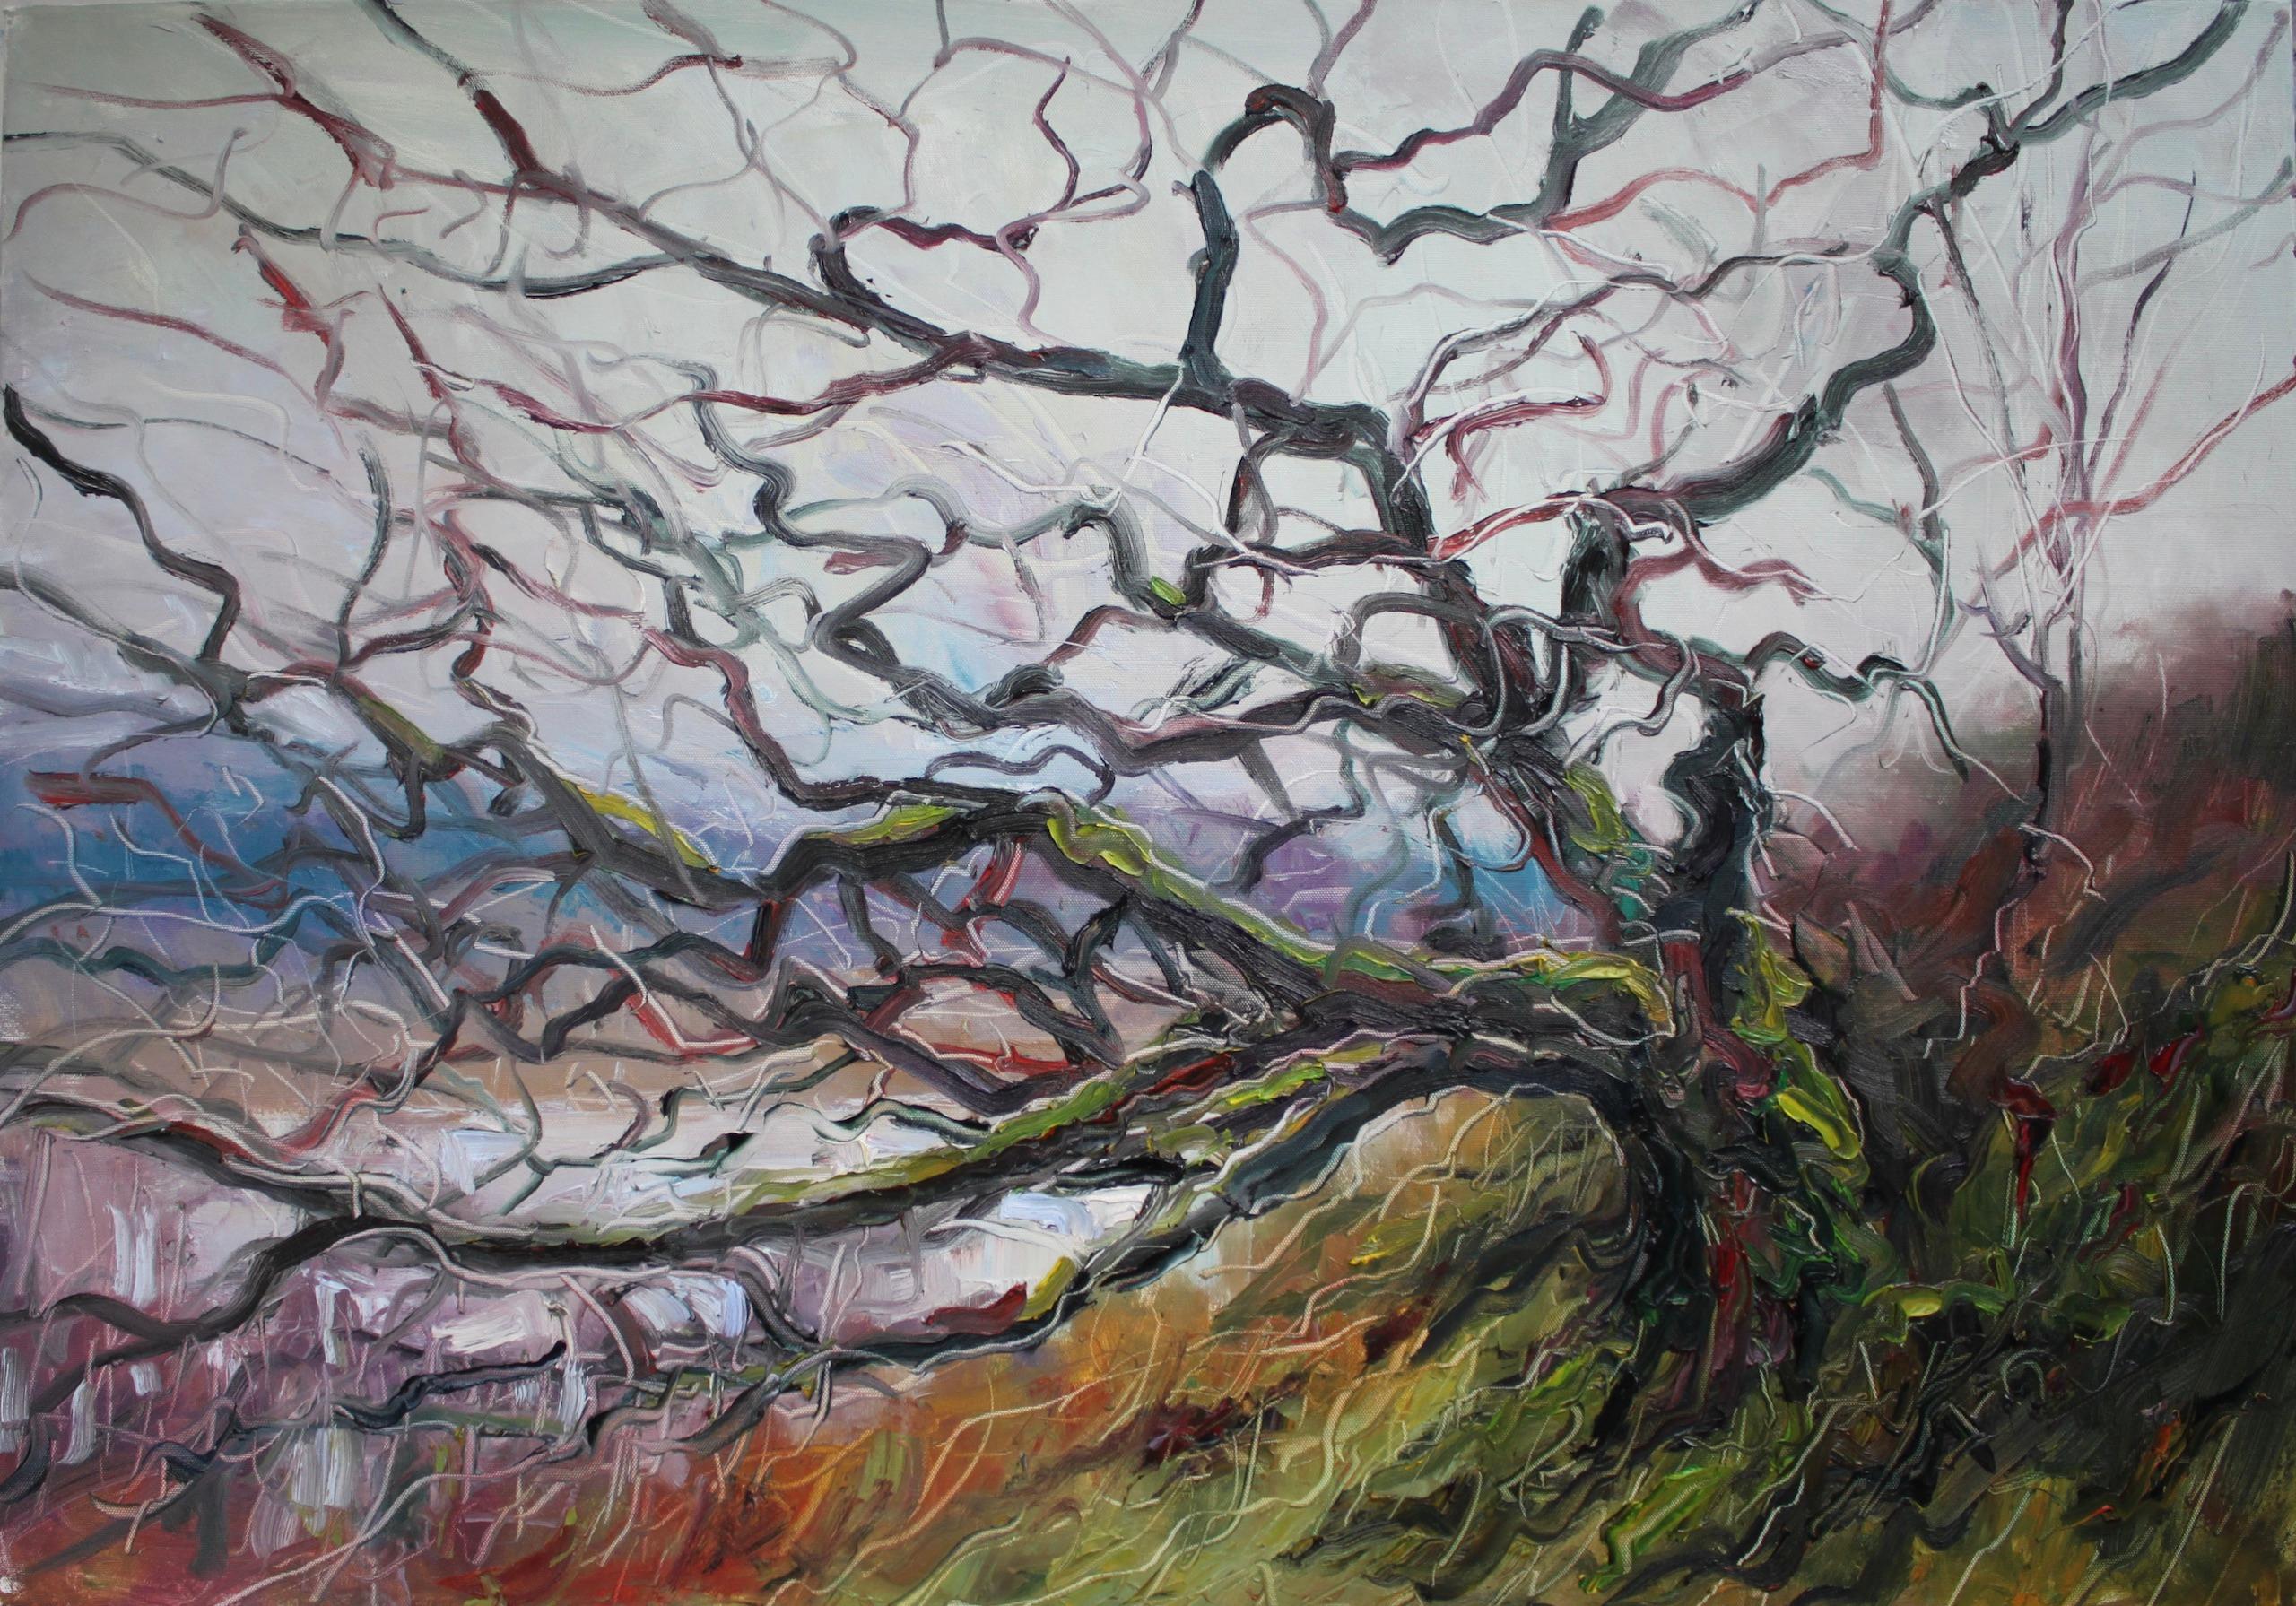 Atlantic Oak Loch Arienas by Jonathan Shearer - Landscape oil painting, tree